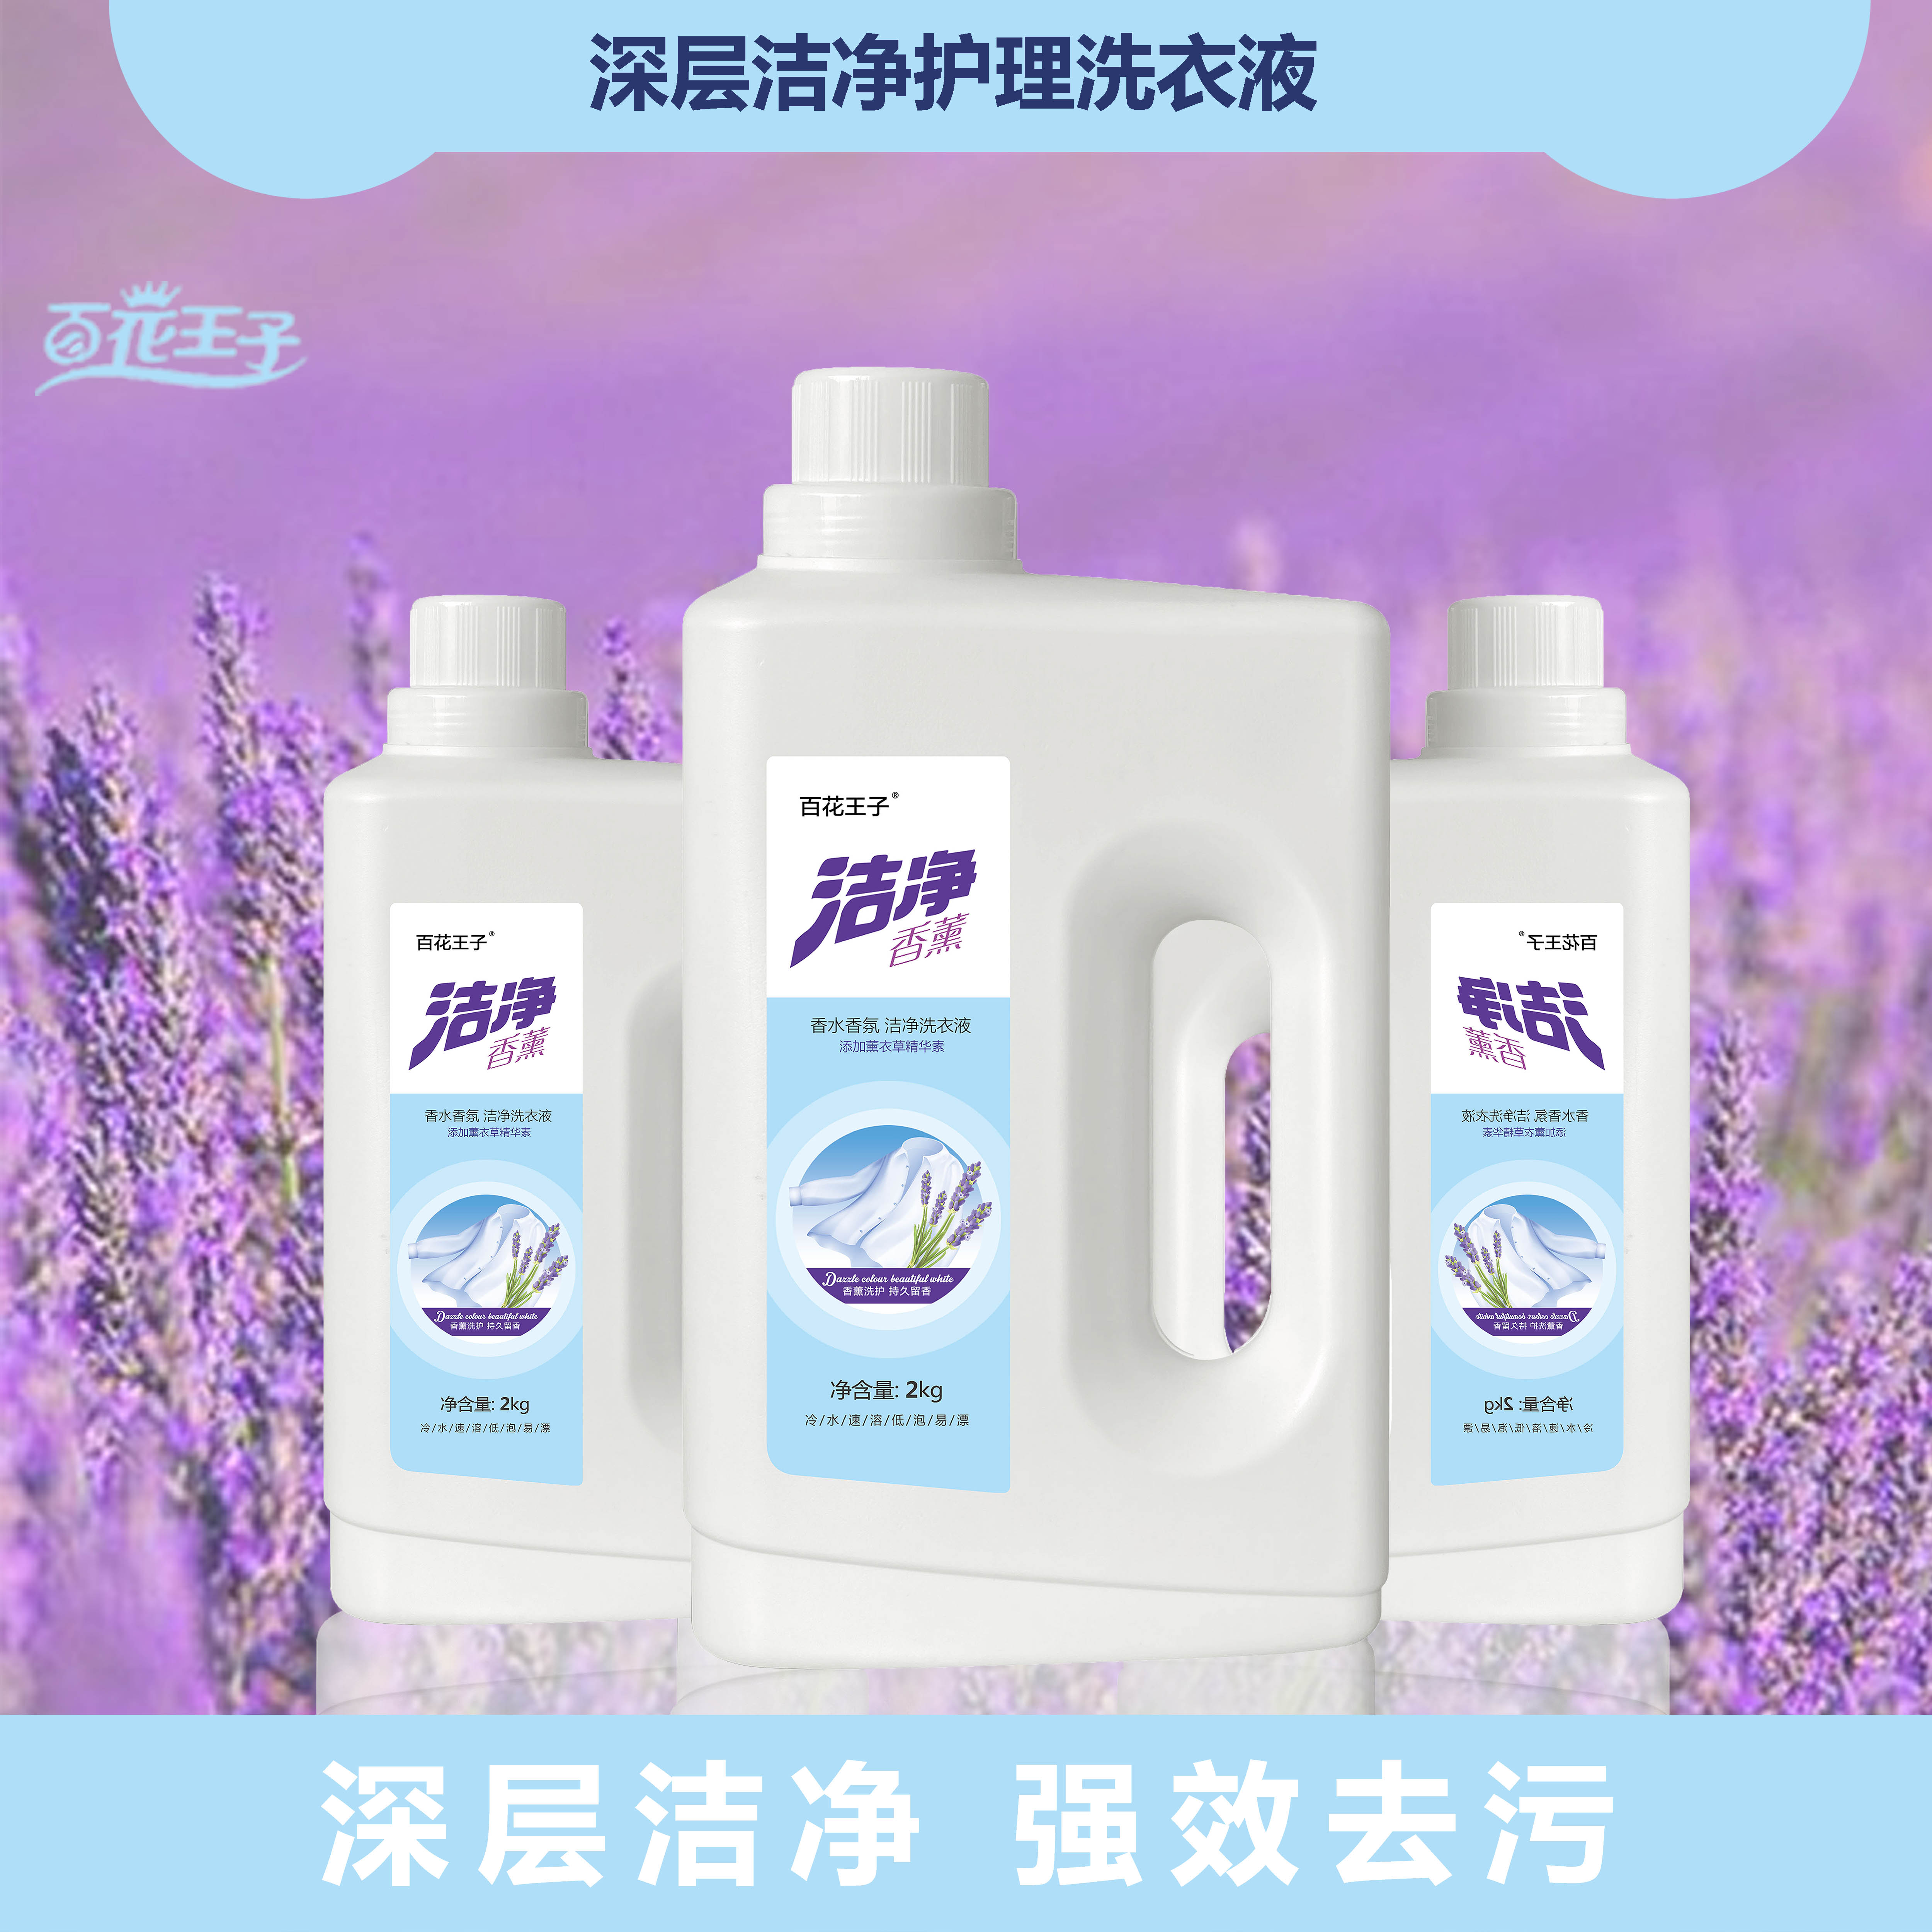 驻马店许昌郑州洗衣液代工生产厂家的的洗衣液在干燥的环境下保存的时间更长吗？